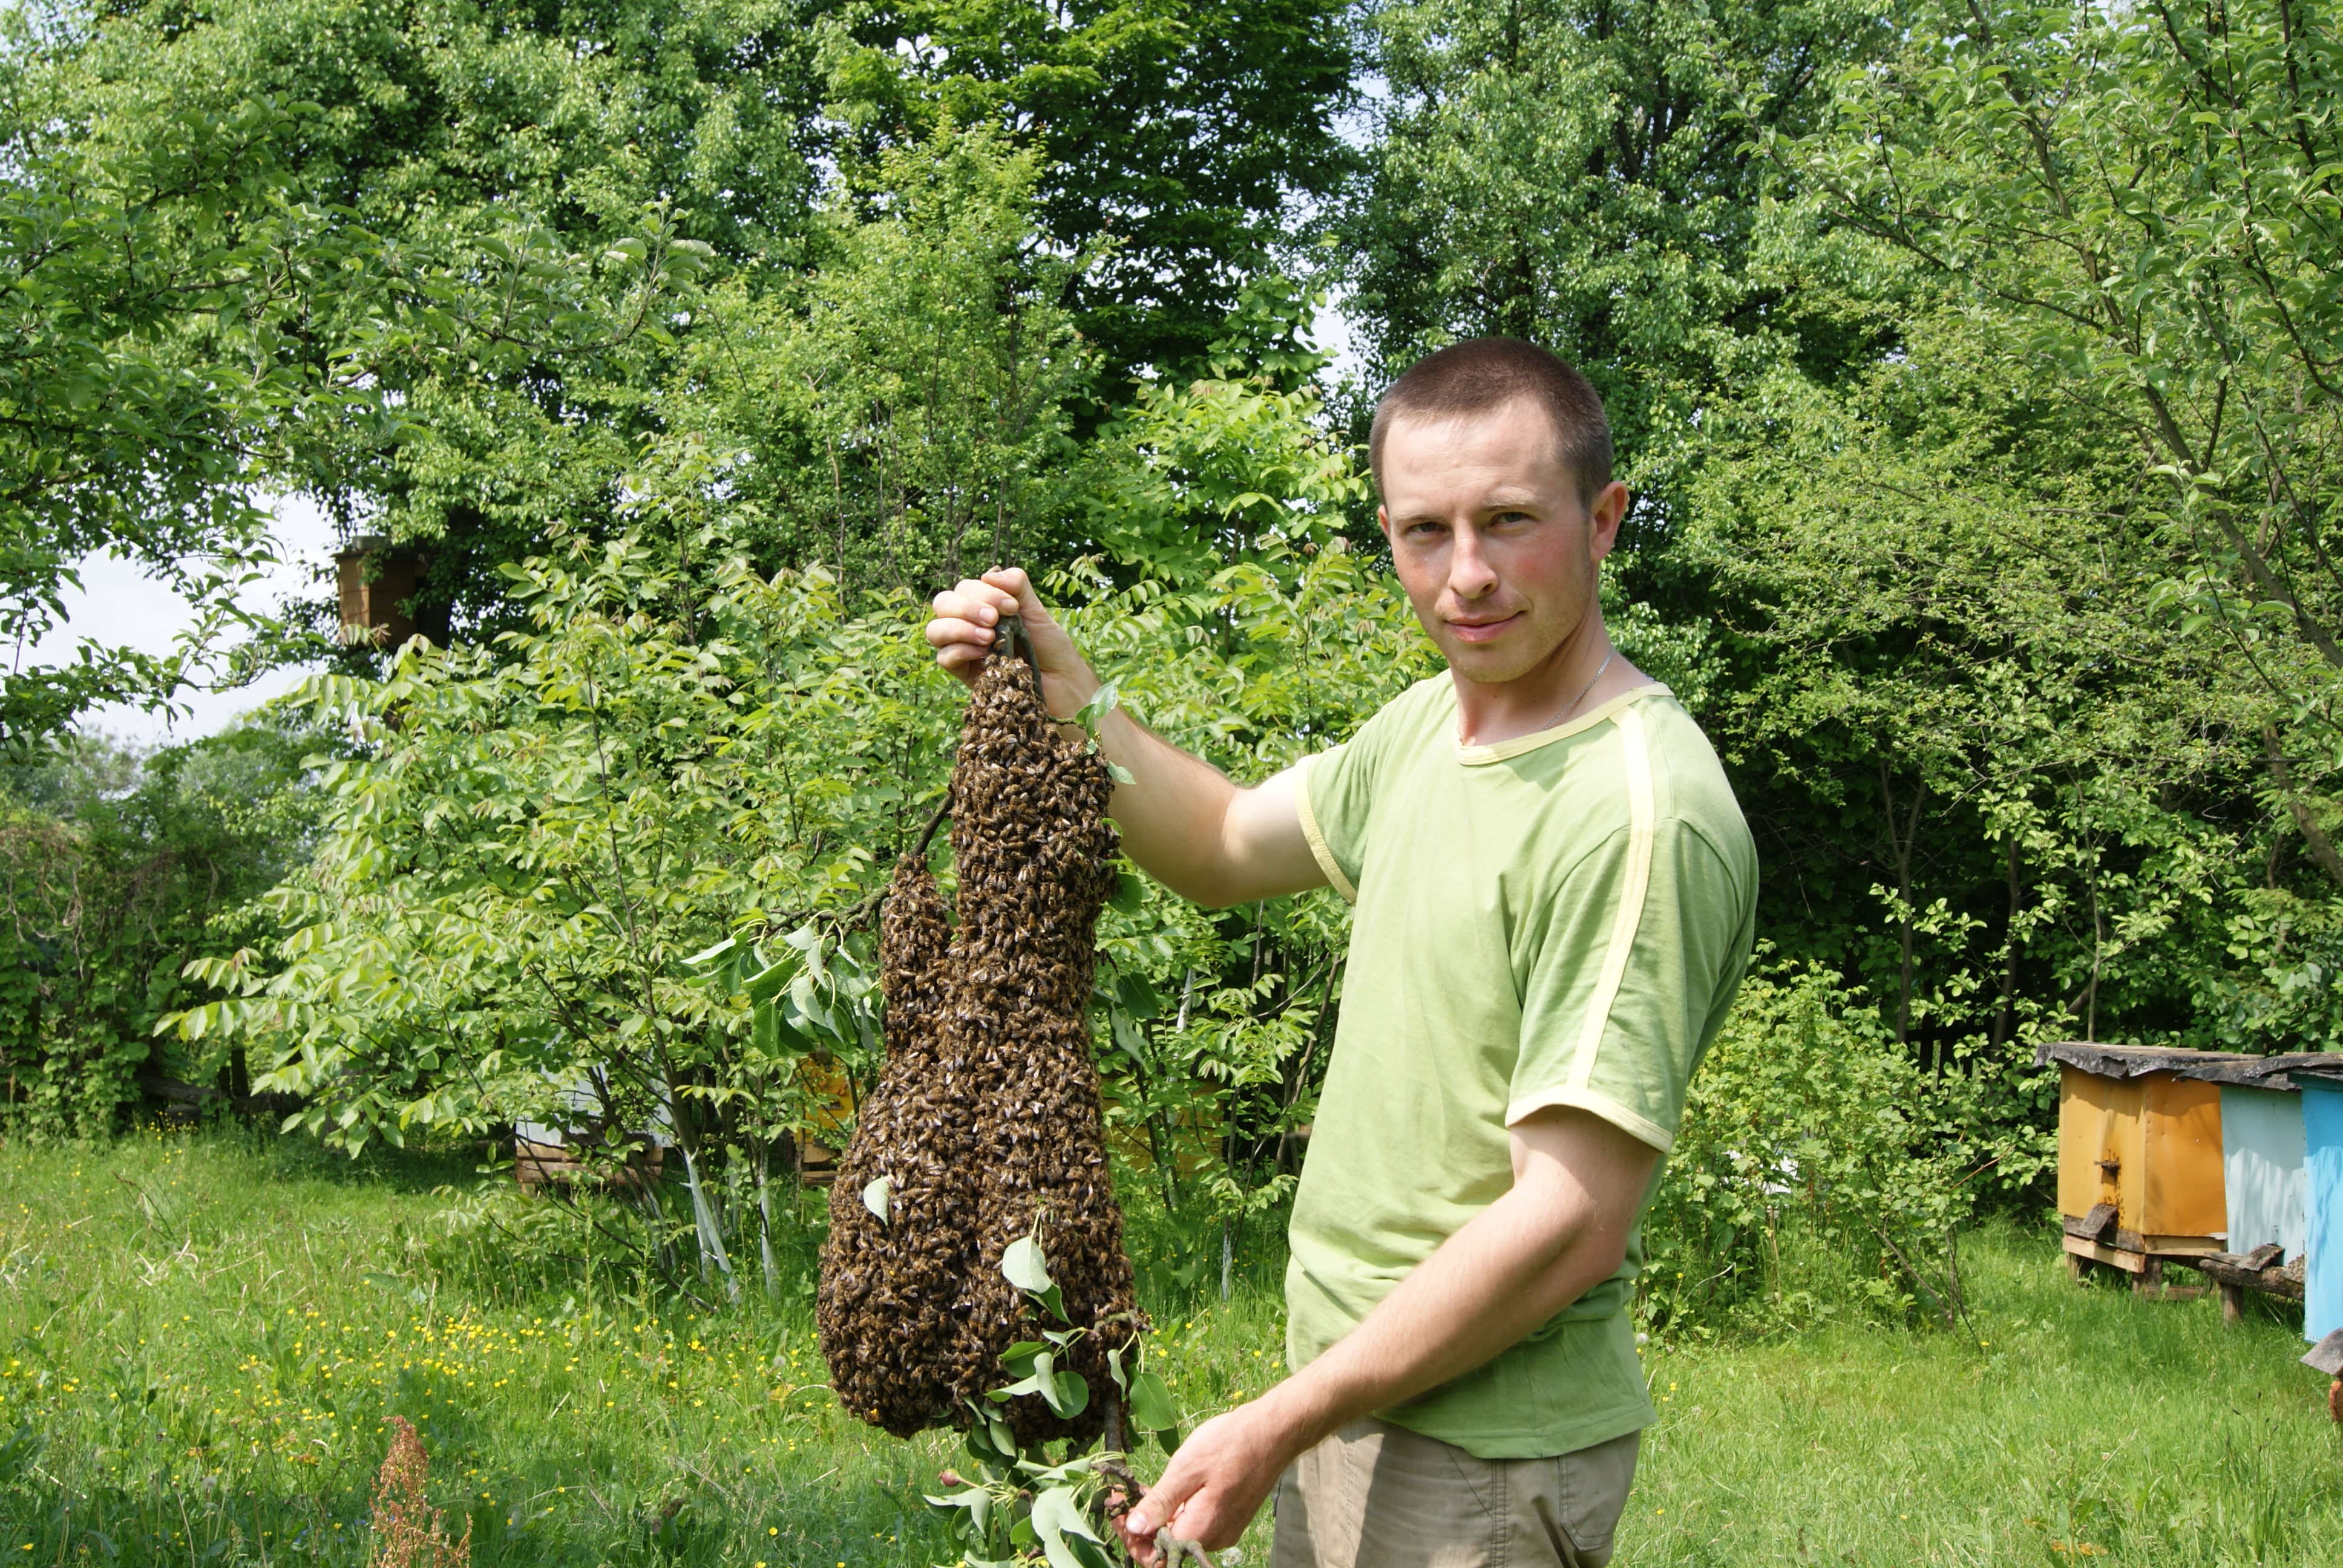 kopotun trzymajacy pszczoly pasieka ule